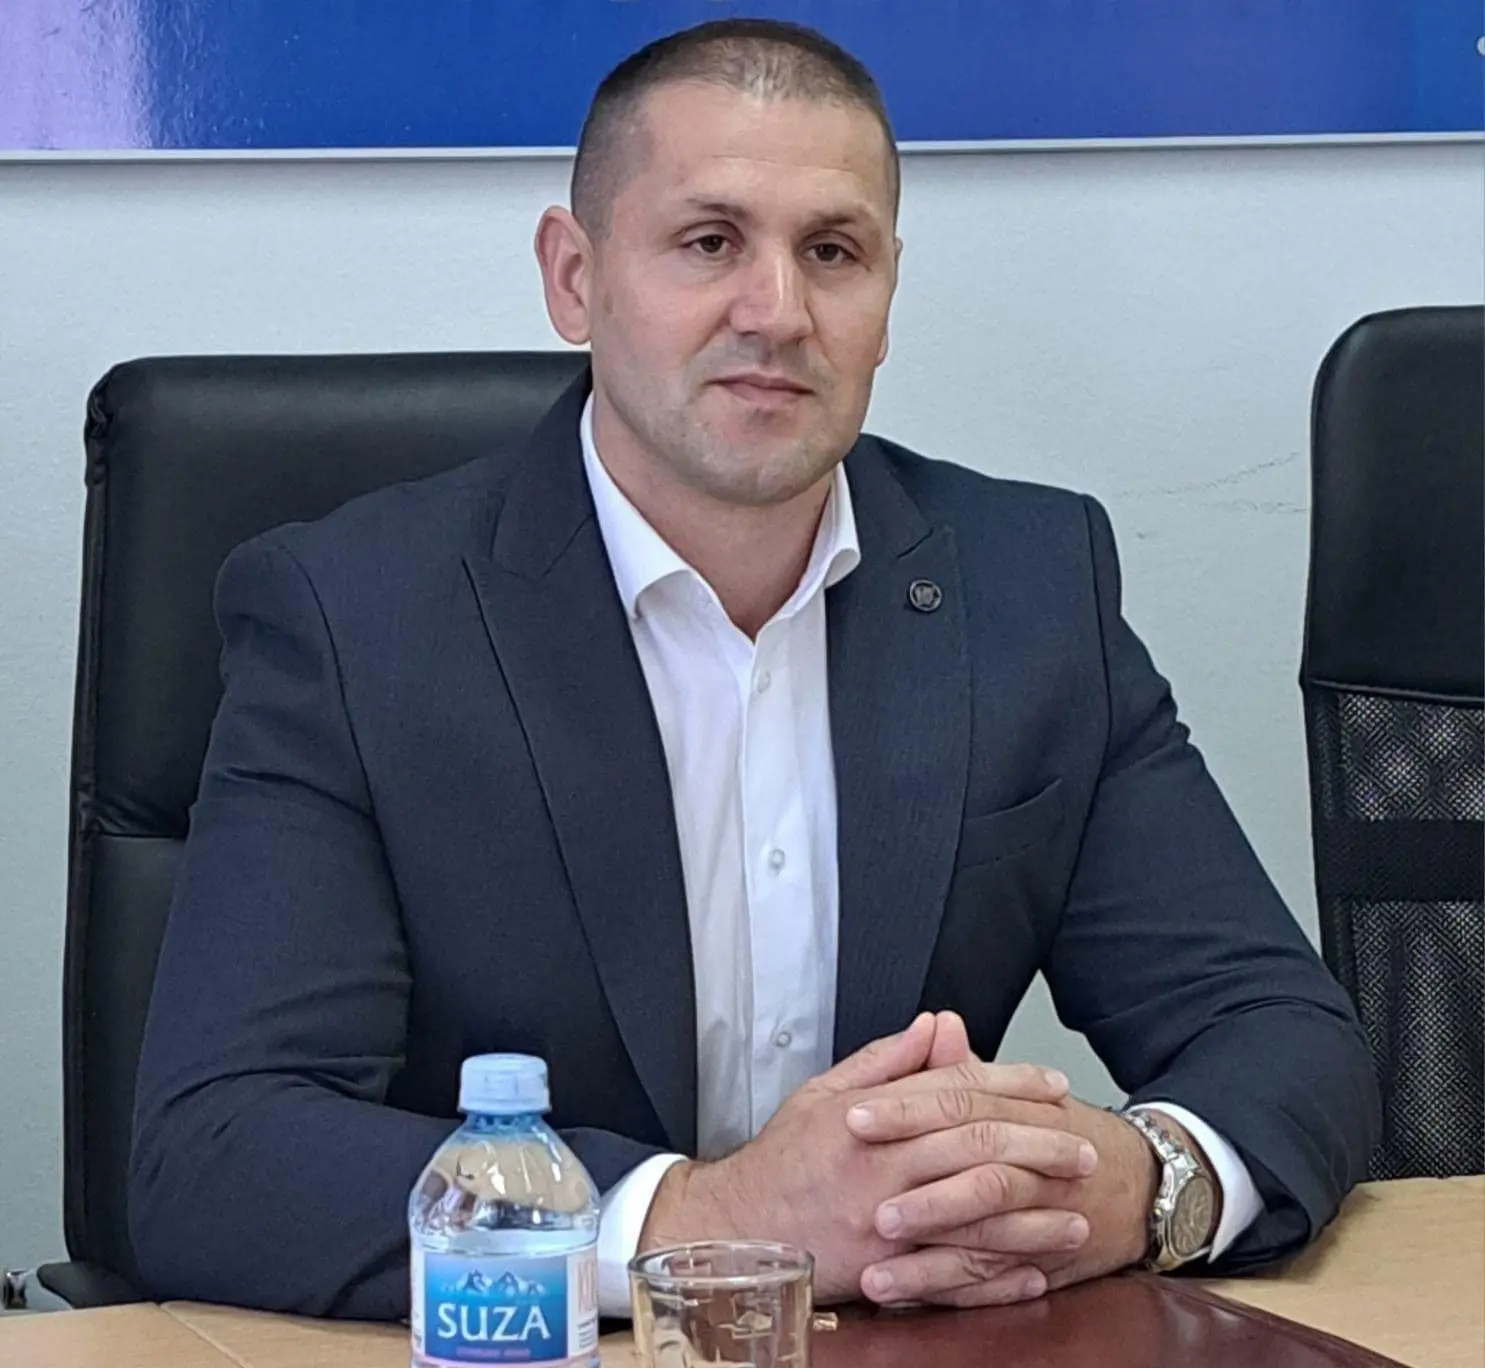 Kandidat za vd direktora policije Lazar Šćepanović organizuje i prolazi poligrafsko ispitivanje uprkos vezama sa Radem Miloševićem